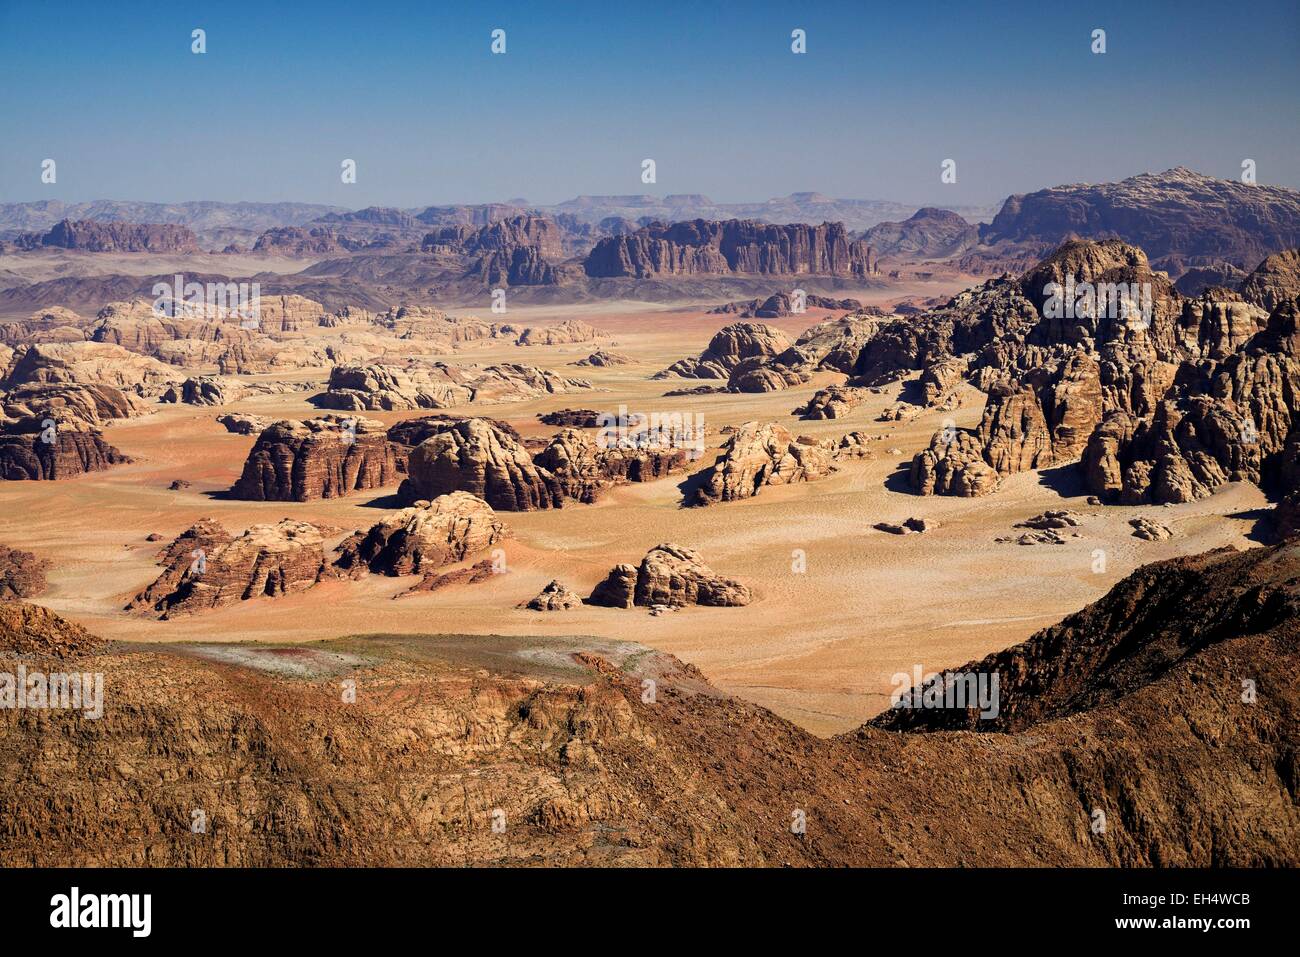 Giordania, Wadi Rum Desert, il confine con l'Arabia Saudita, la vista dalla cima del Jebel Umm Adaami (1832m), la montagna più alta della Giordania Foto Stock